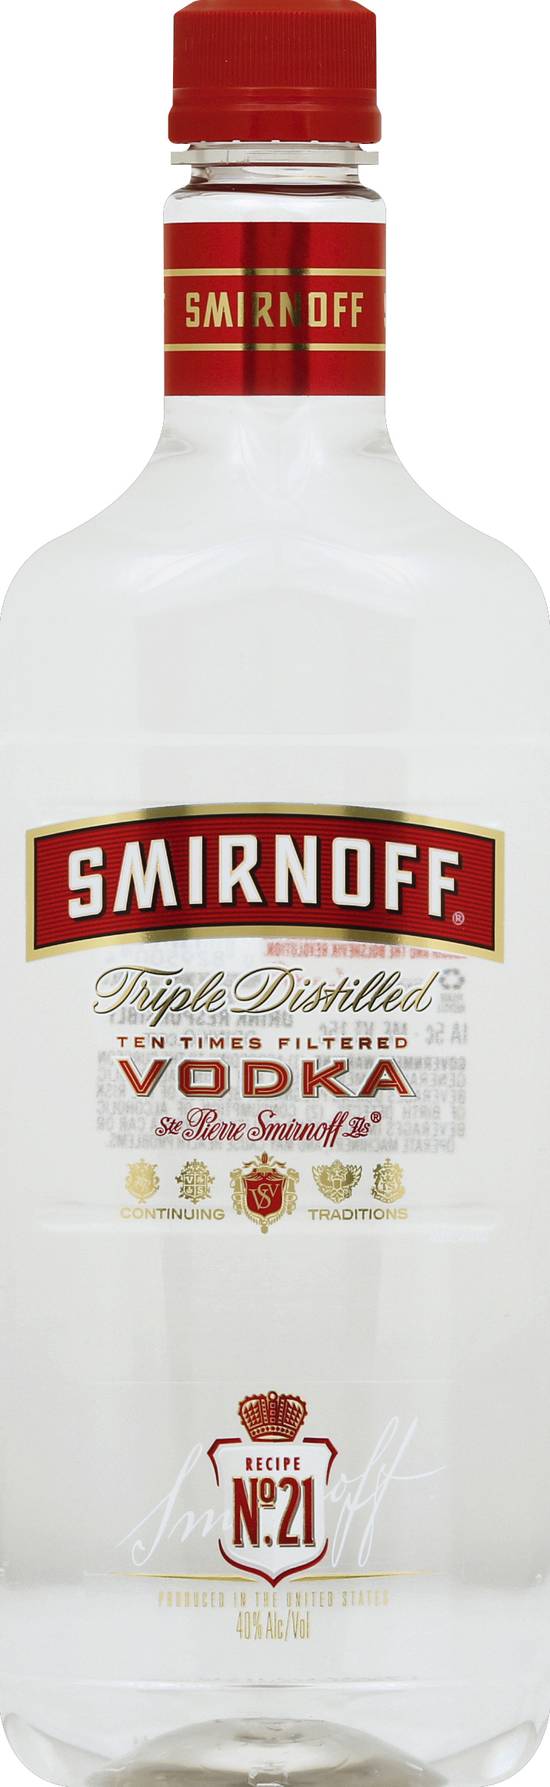 Smirnoff No. 21 80 Proof Vodka (750 ml)